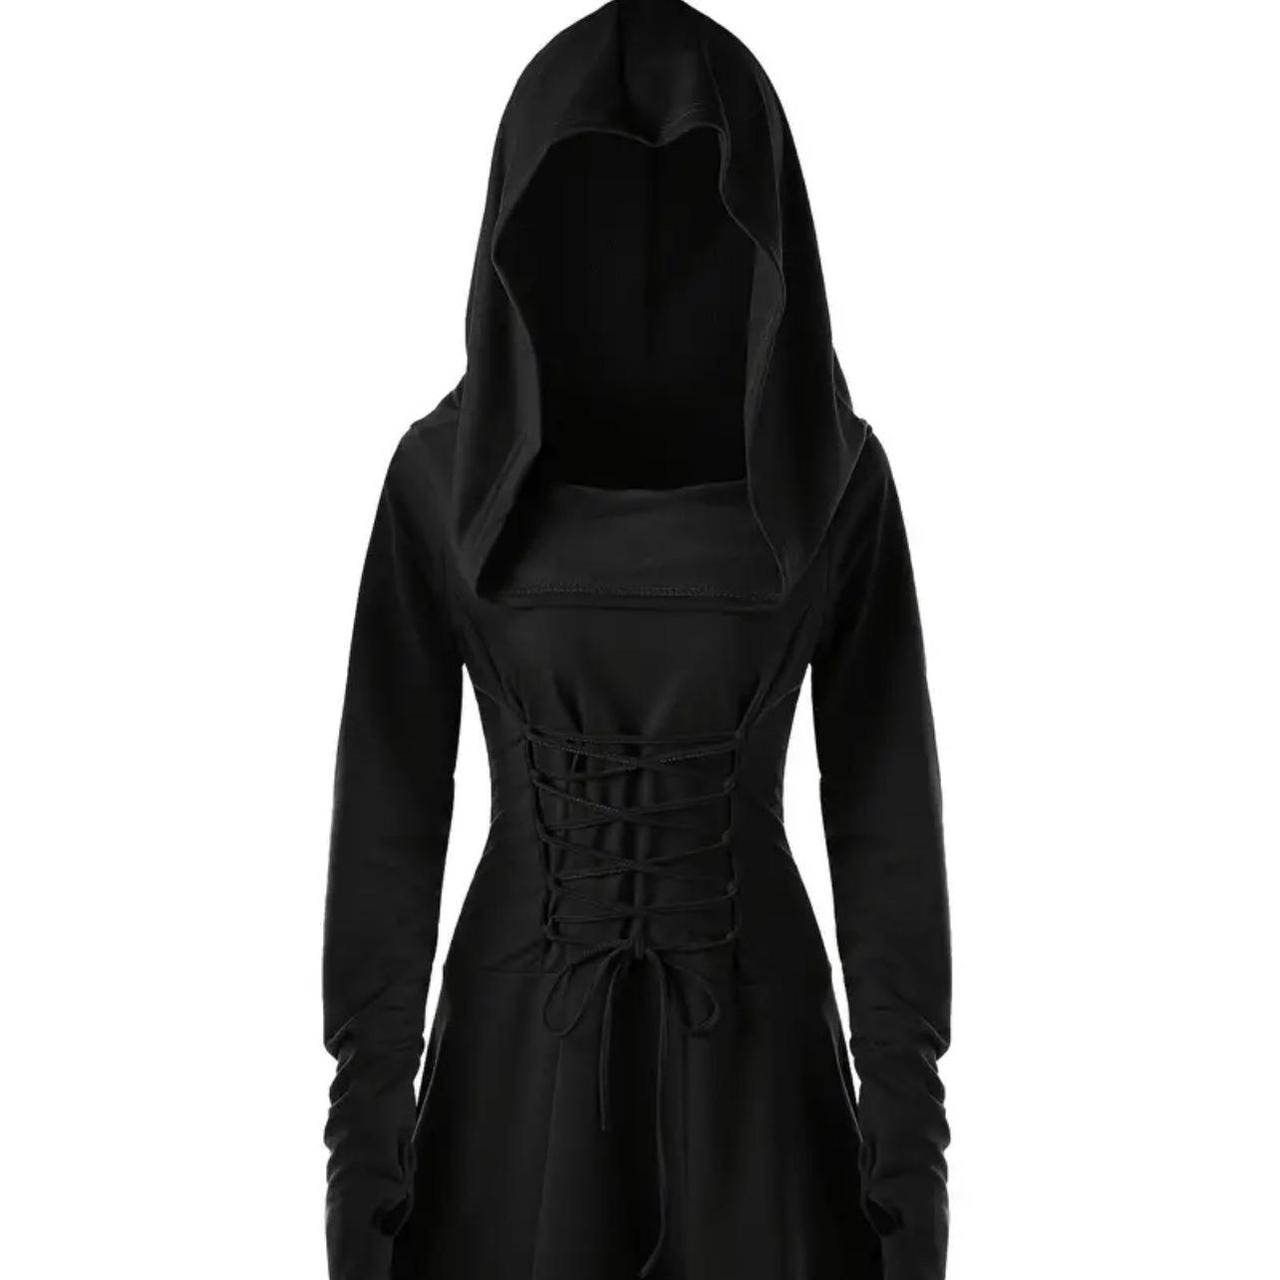 Gothic Hooded Lace Up Dress, Vintage Black Long... - Depop